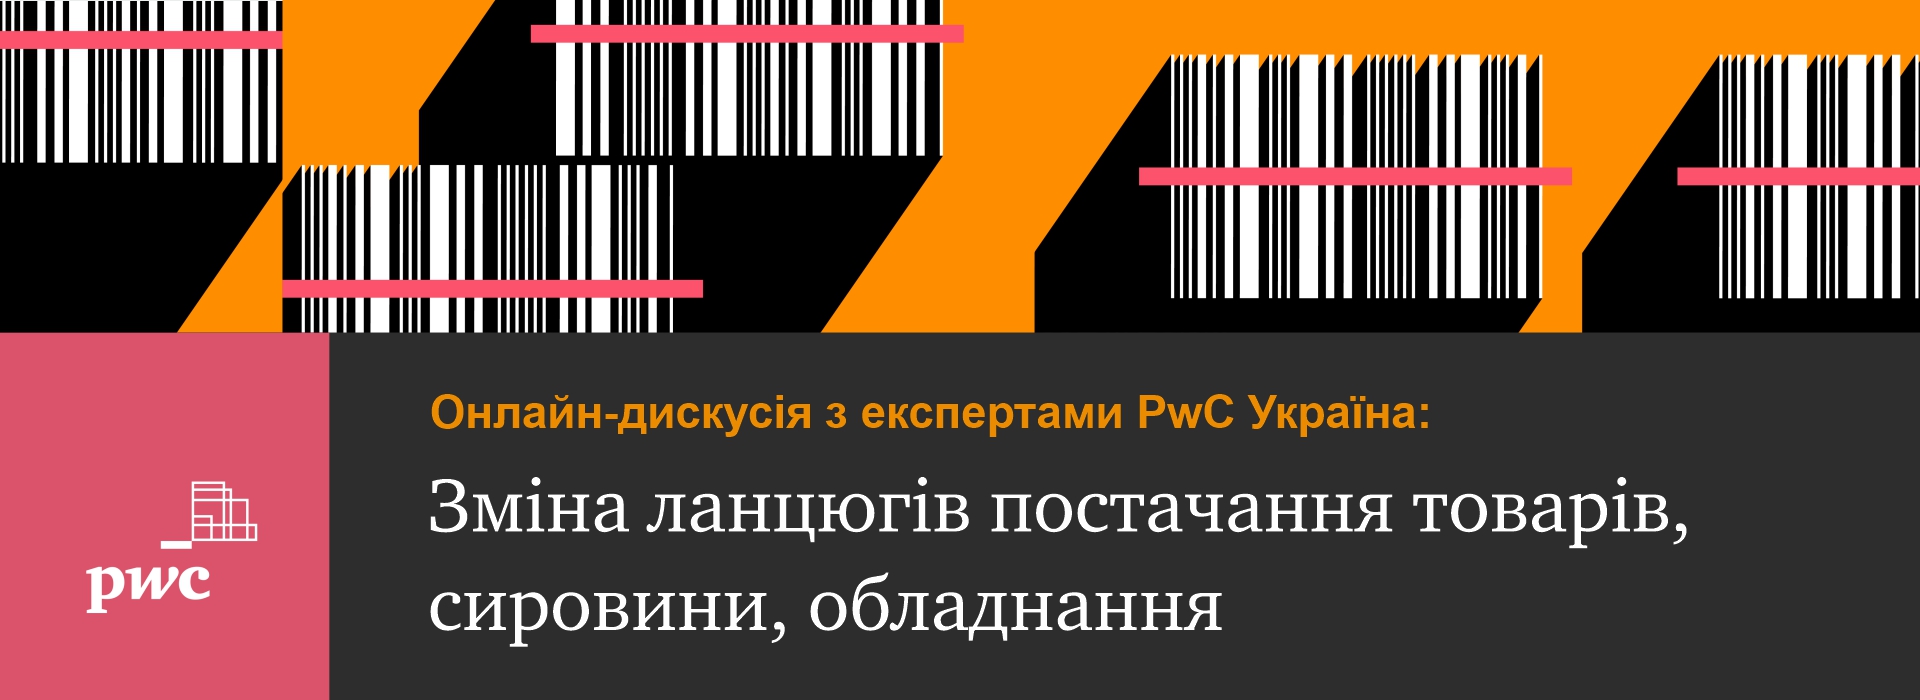 Онлайн-дискусія з експертами PwC Україна «Зміна ланцюгів постачання товарів, сировини, обладнання»